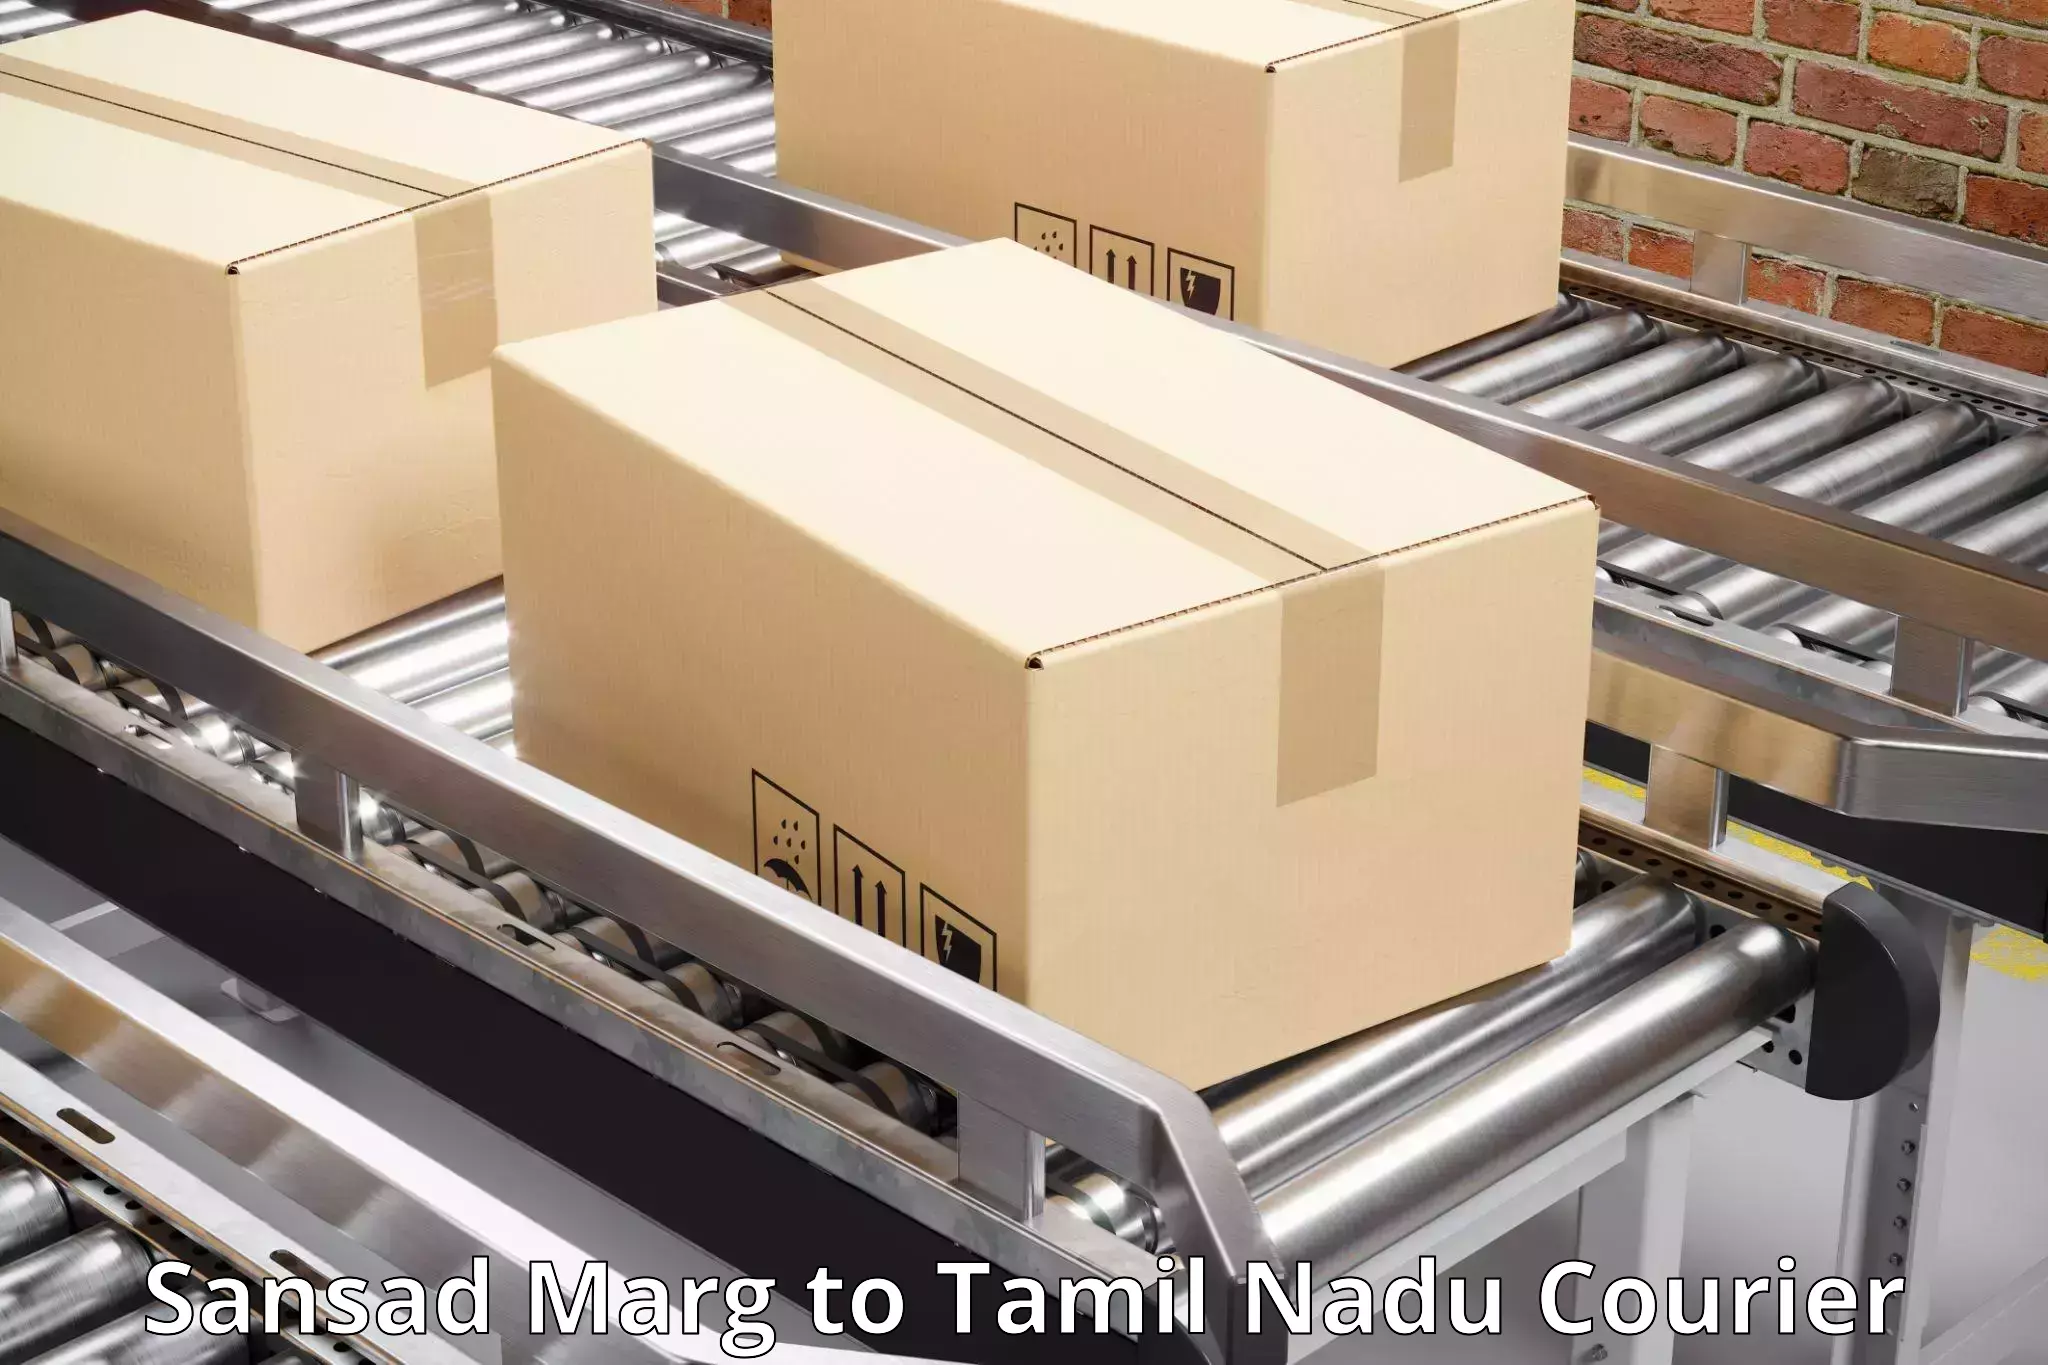 Expedited parcel delivery Sansad Marg to Tiruturaipundi